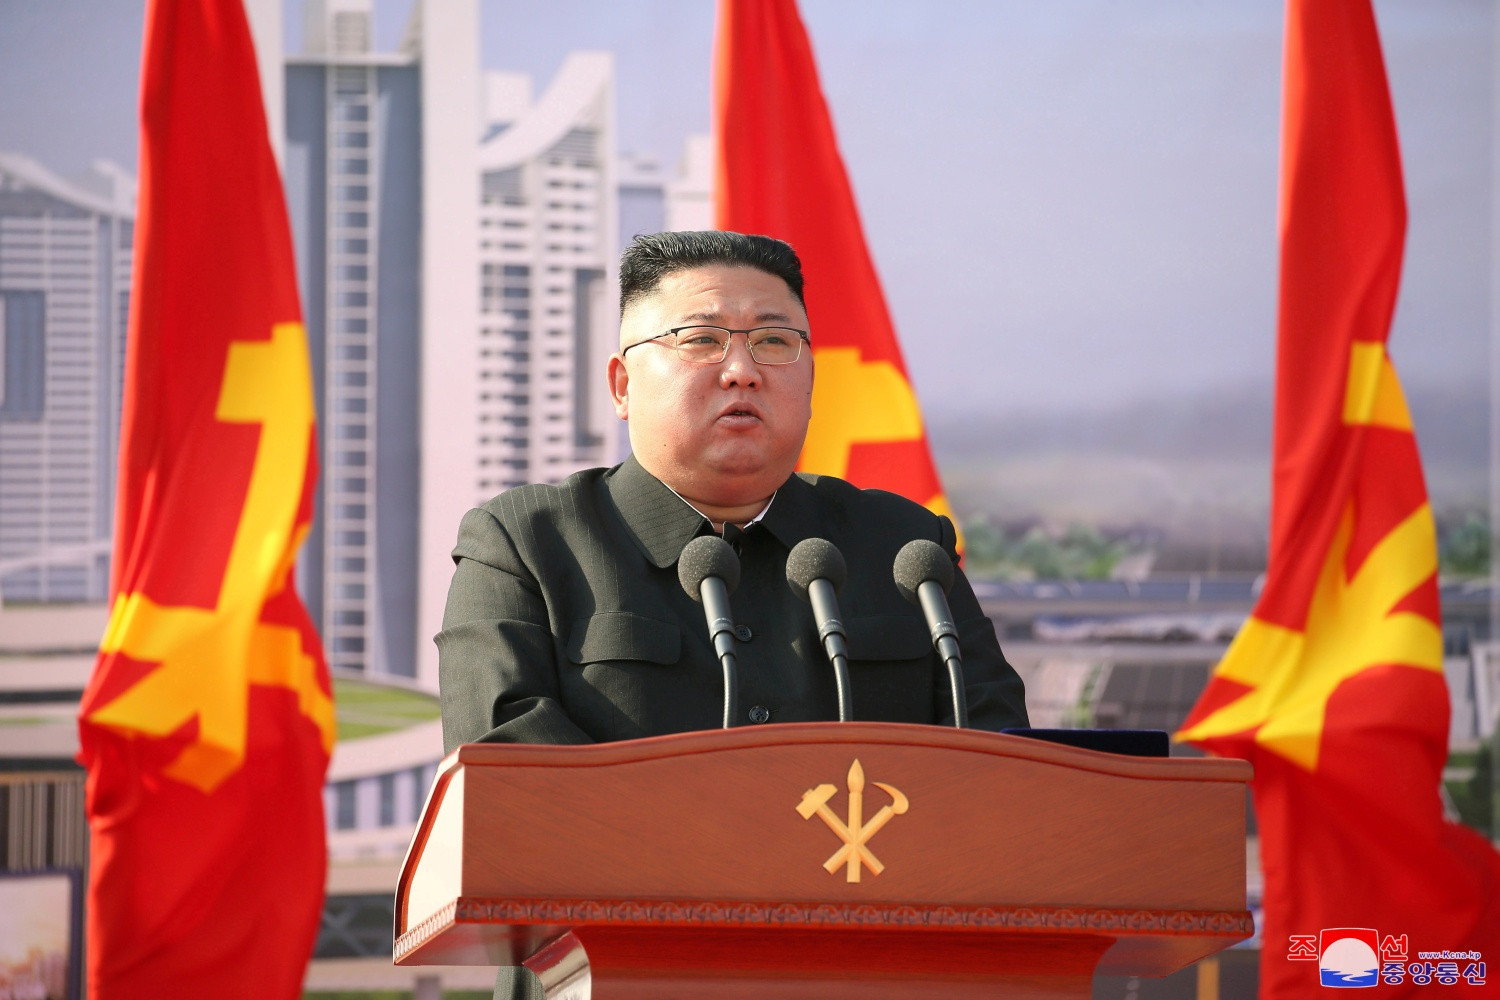 سكاي لاين تدين انتقاد كوريا الشمالية المستهجن للمبادرة الأمريكية في الأمم المتحدة